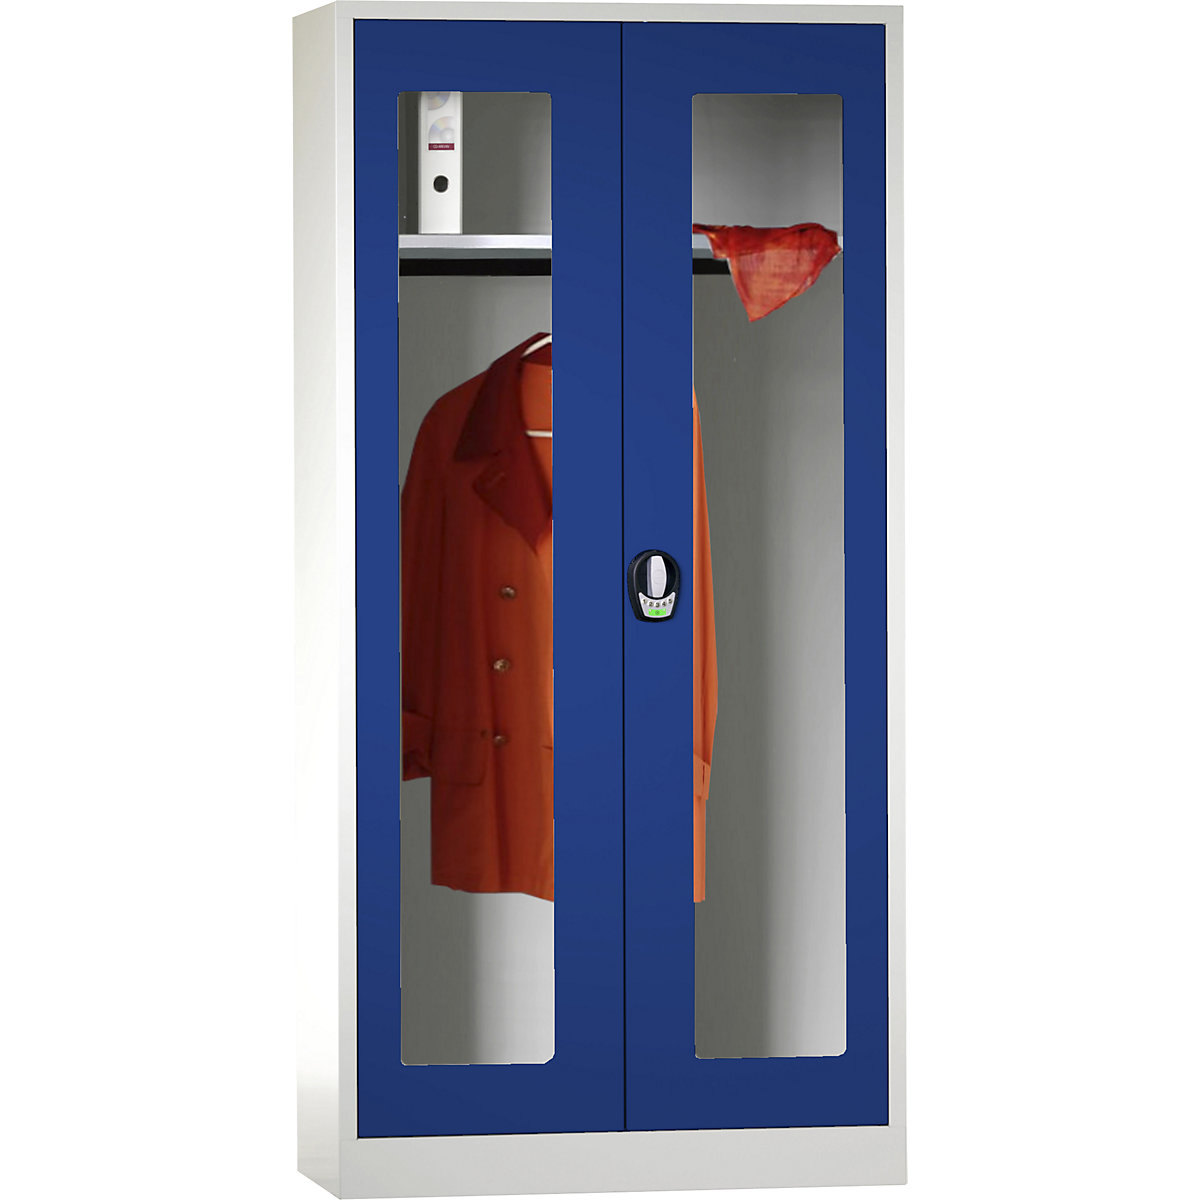 Šatní skříň s otočnými dveřmi s elektronickým zámkem – Wolf, s dveřmi s okénkem, světlá šedá / enciánová modrá